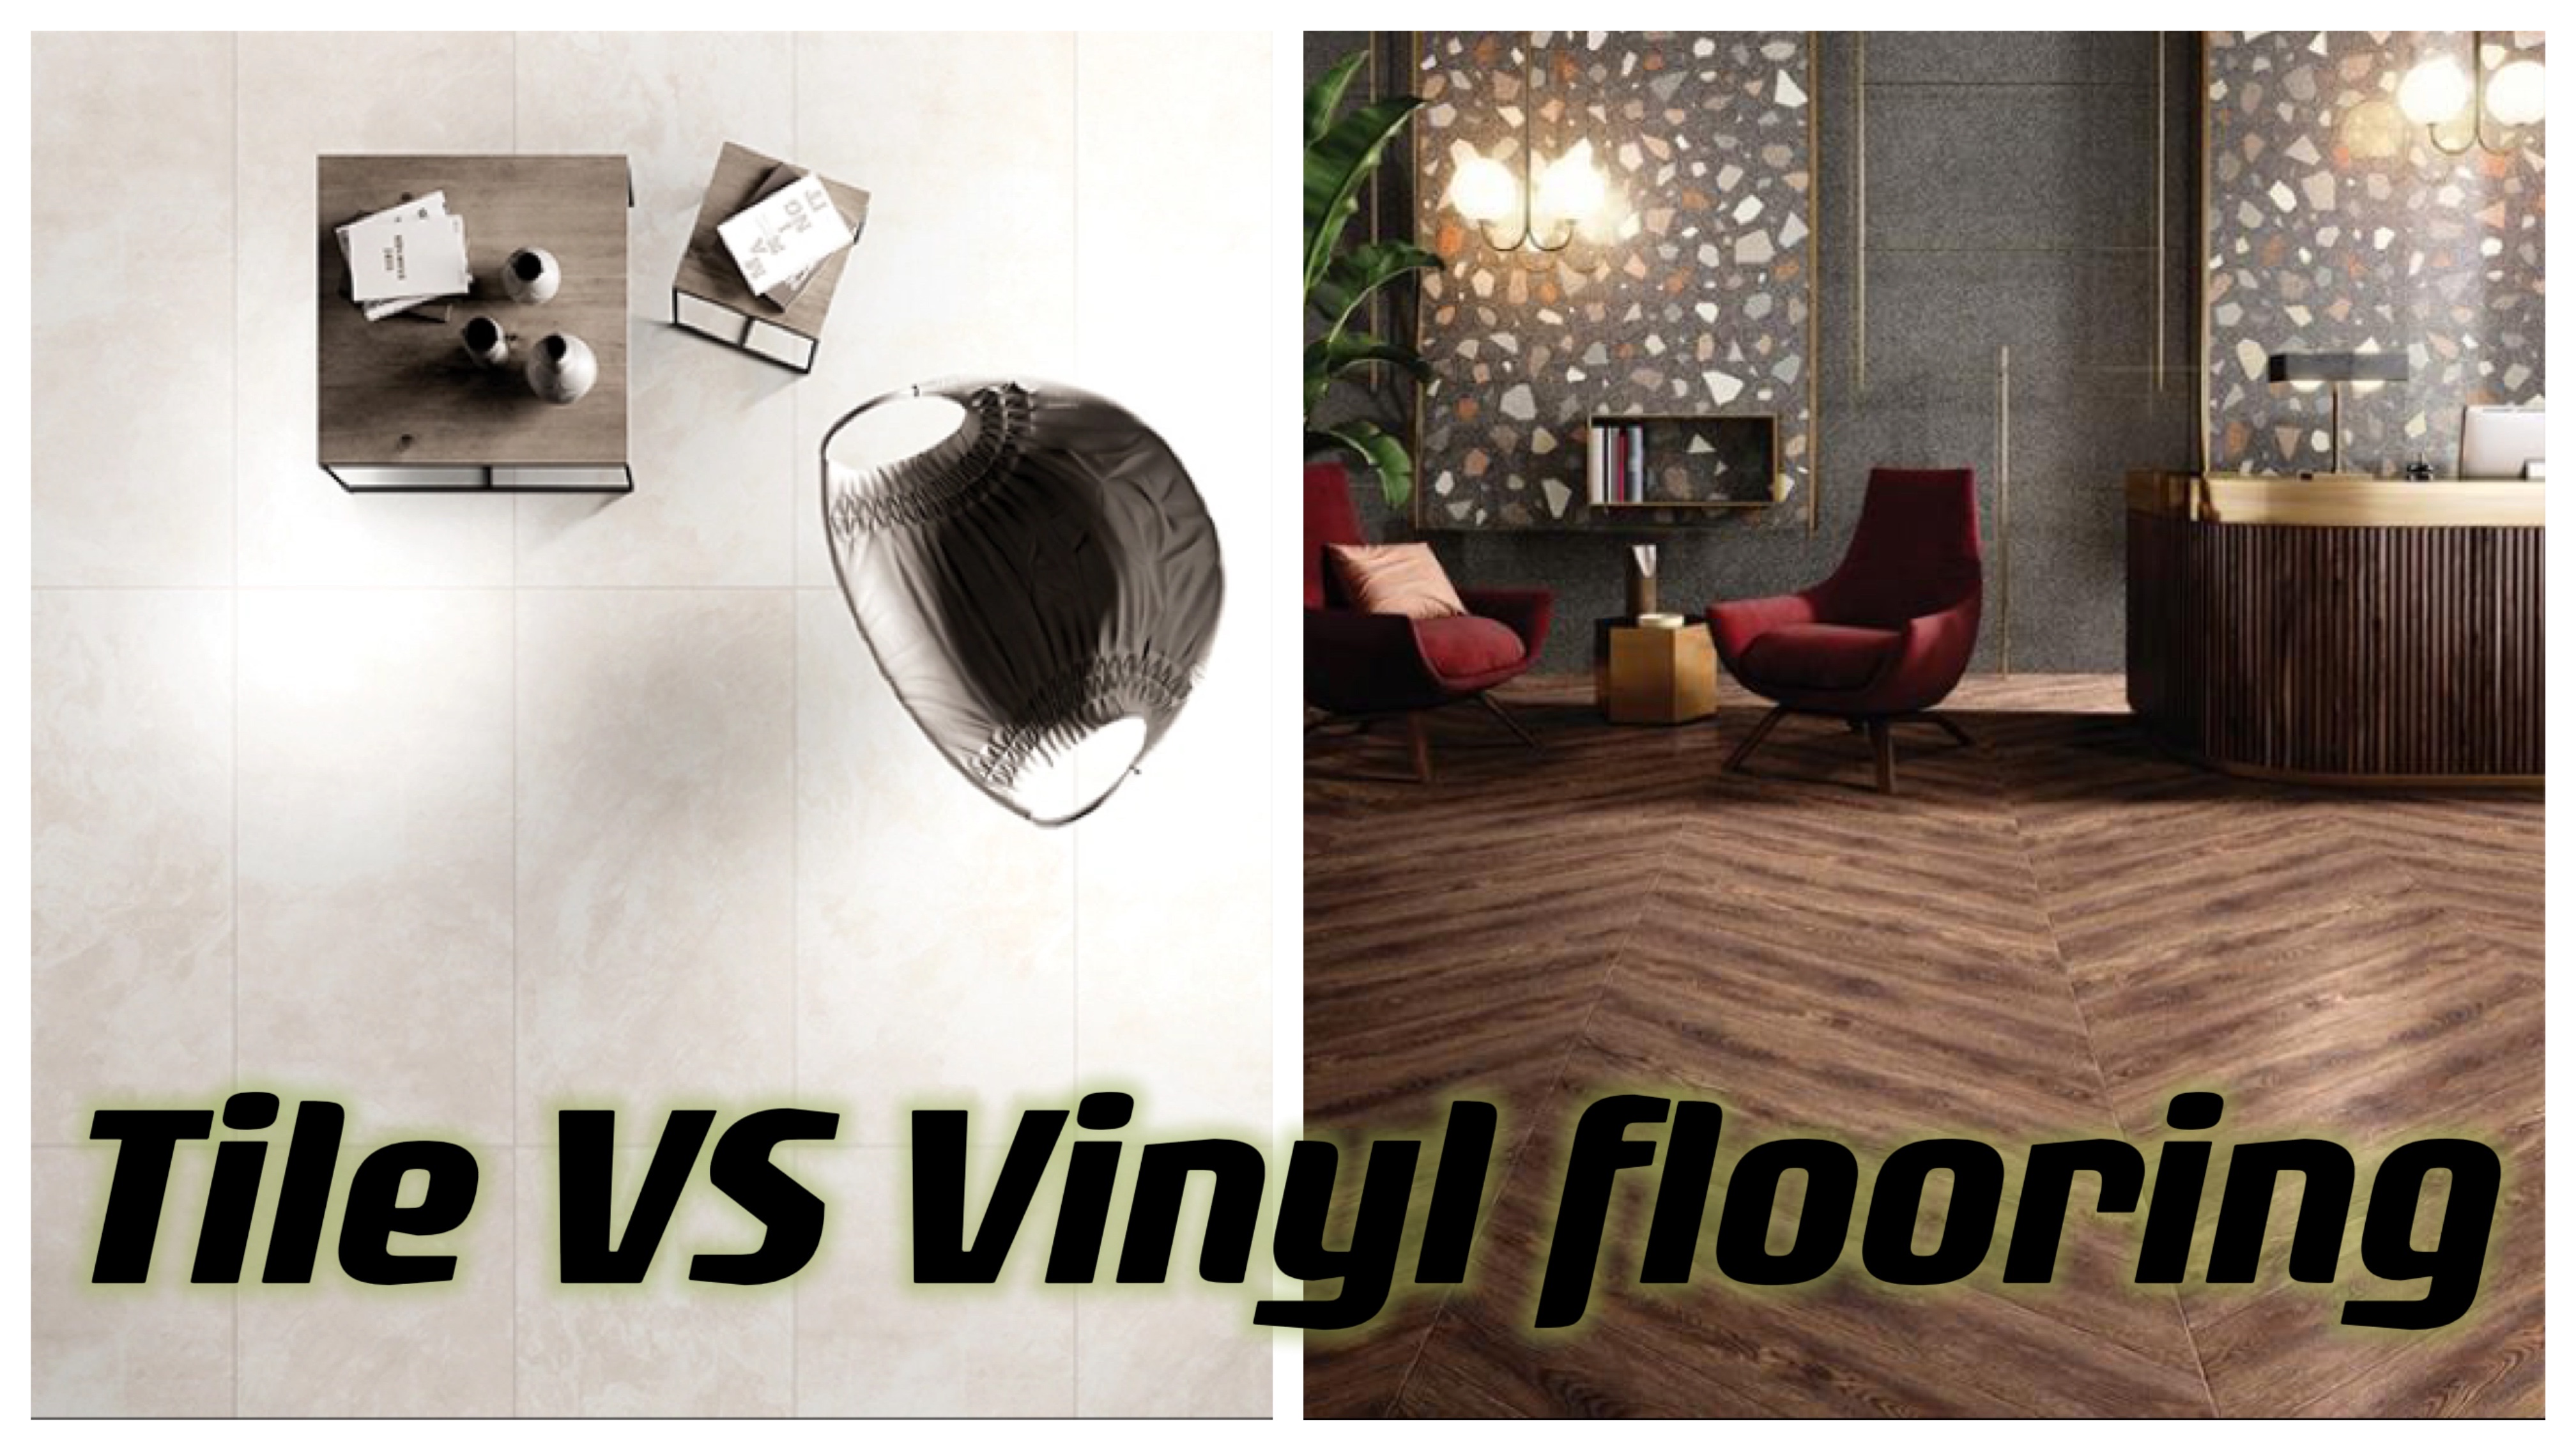 Tile VS Vinyl Flooring